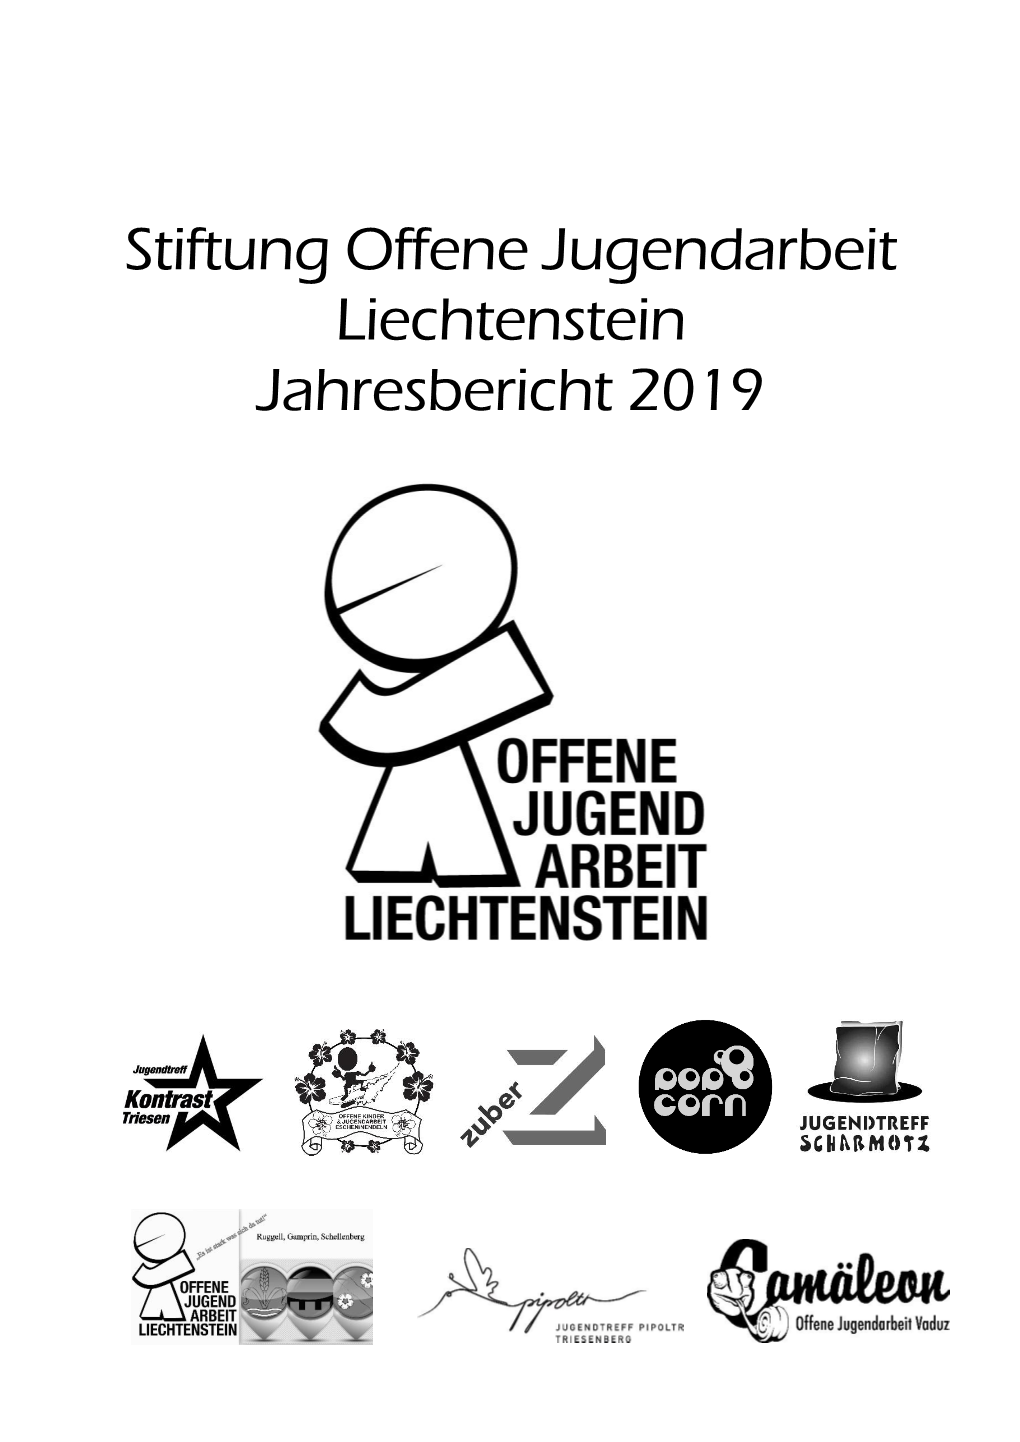 Stiftung Offene Jugendarbeit Liechtenstein Jahresbericht 2019